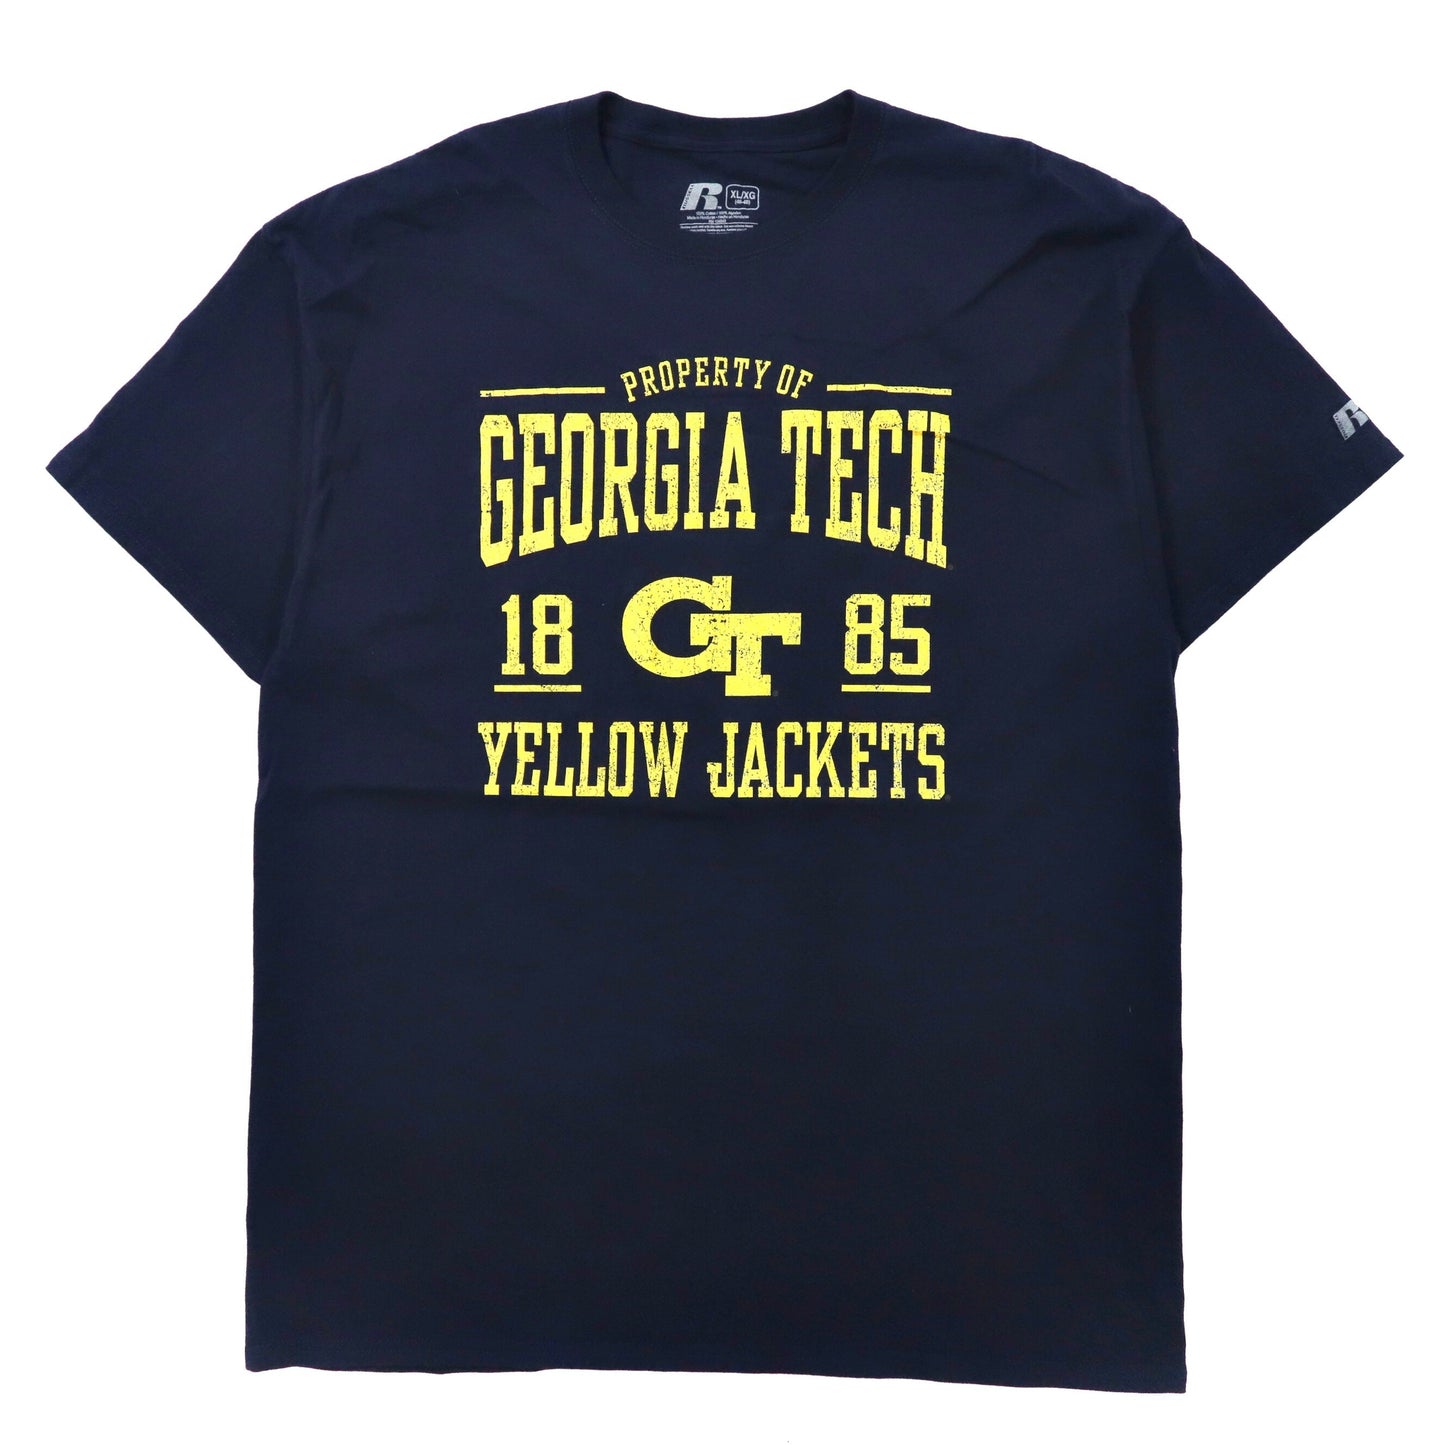 RUSSELL ビッグサイズ カレッジプリントTシャツ XL ネイビー コットン NCAA バスケットボール GEORGIA TECH YELLOW JACKETS ホンジュラス製